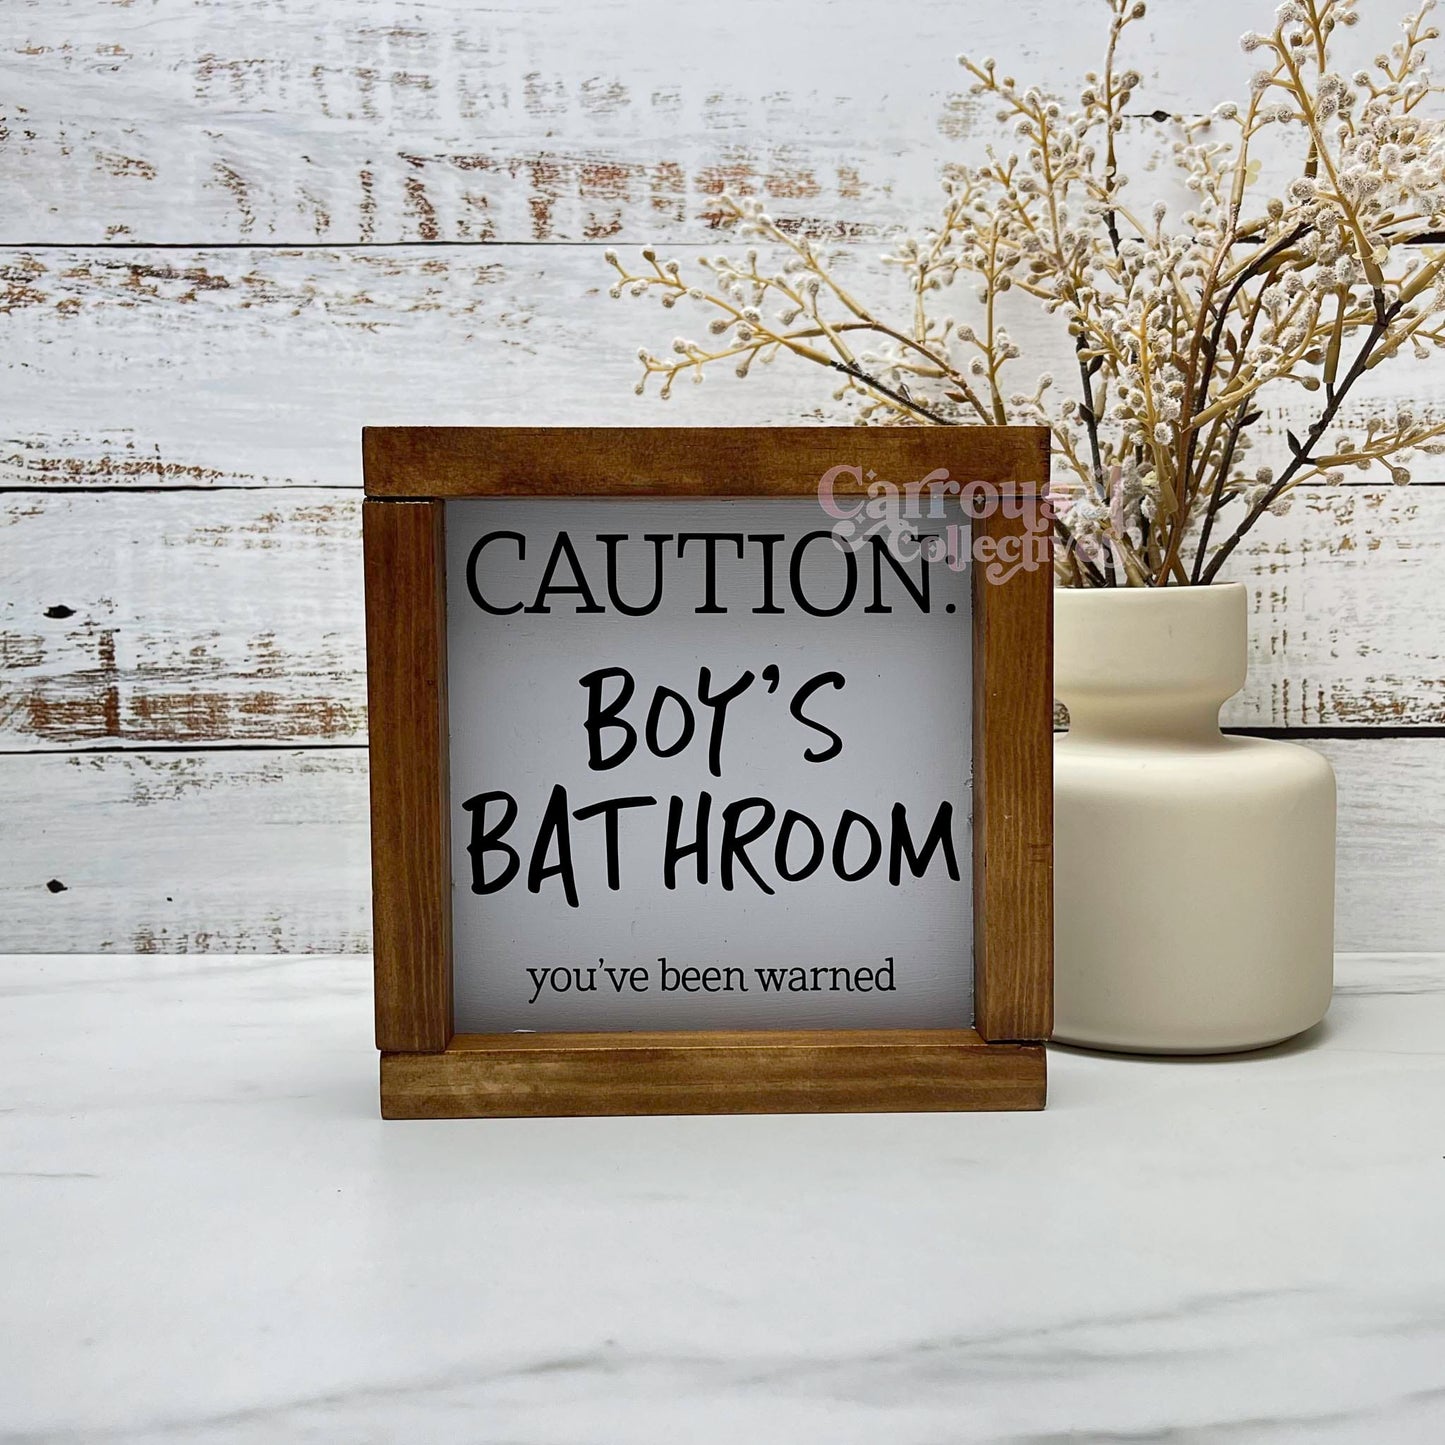 Caution boys bathroom framed bathroom wood sign, bathroom decor, home decor